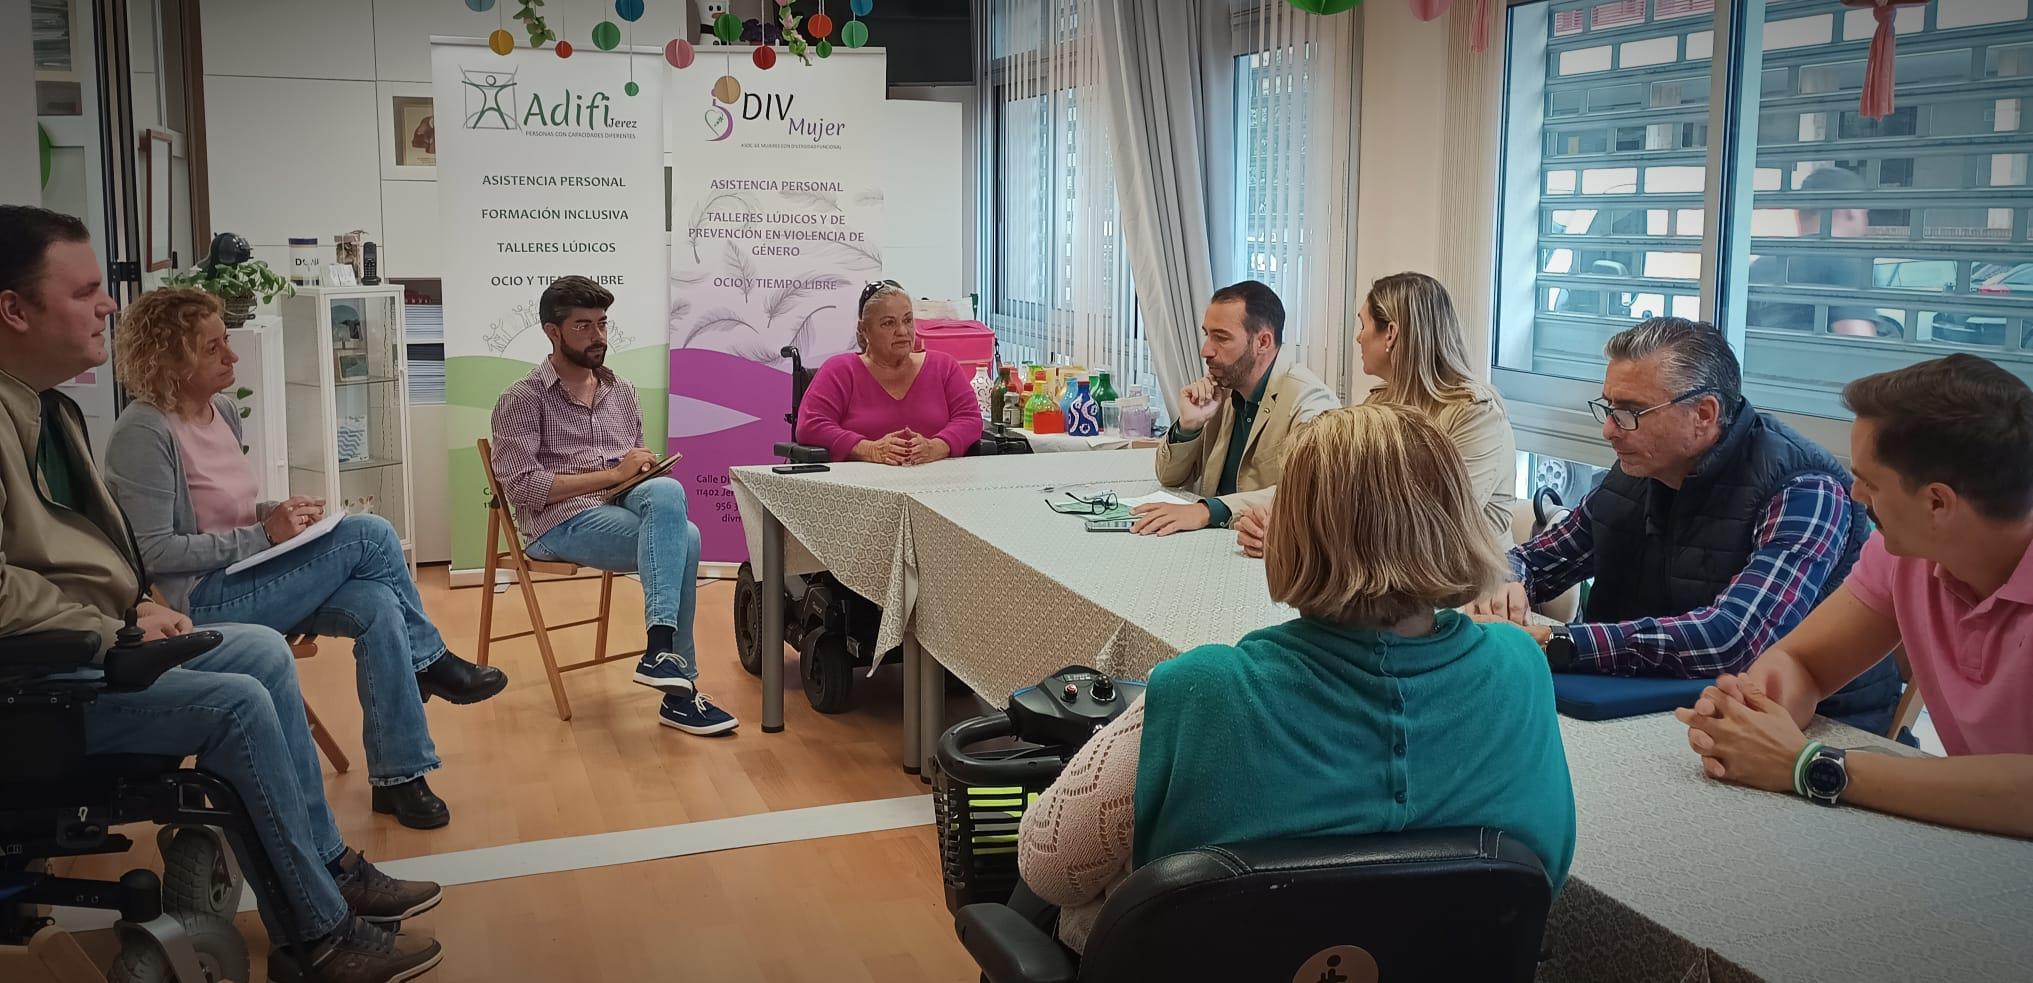 Casal (AxSí): "Los andalucistas vamos a hacer de Jerez una ciudad amable e integradora, sin barreras"